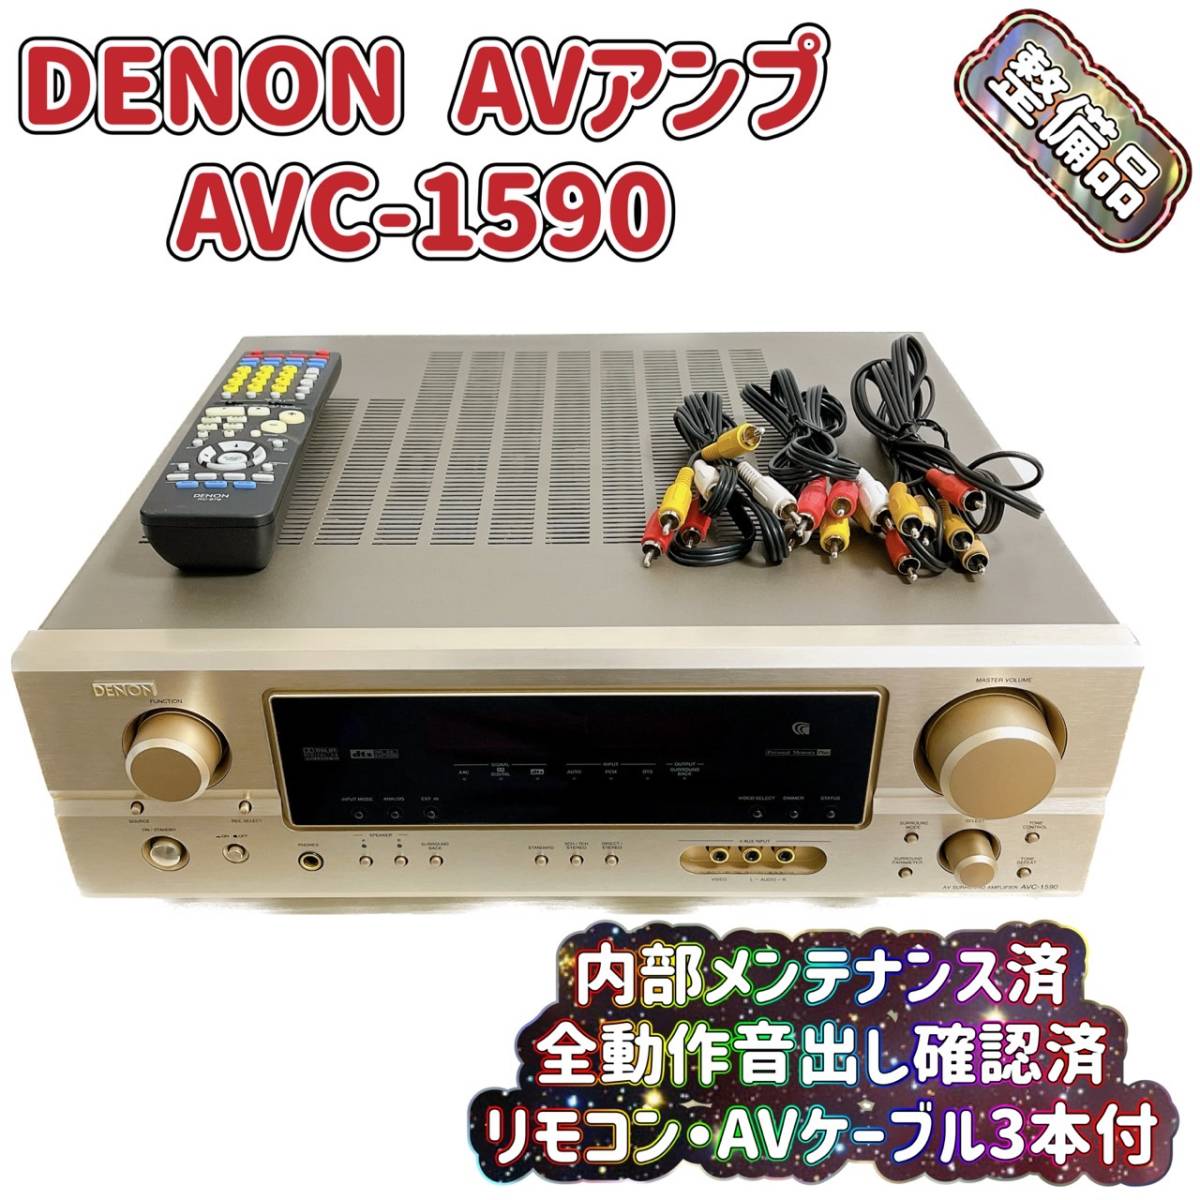 AVC-1610 デノン AVアンプ - アンプ